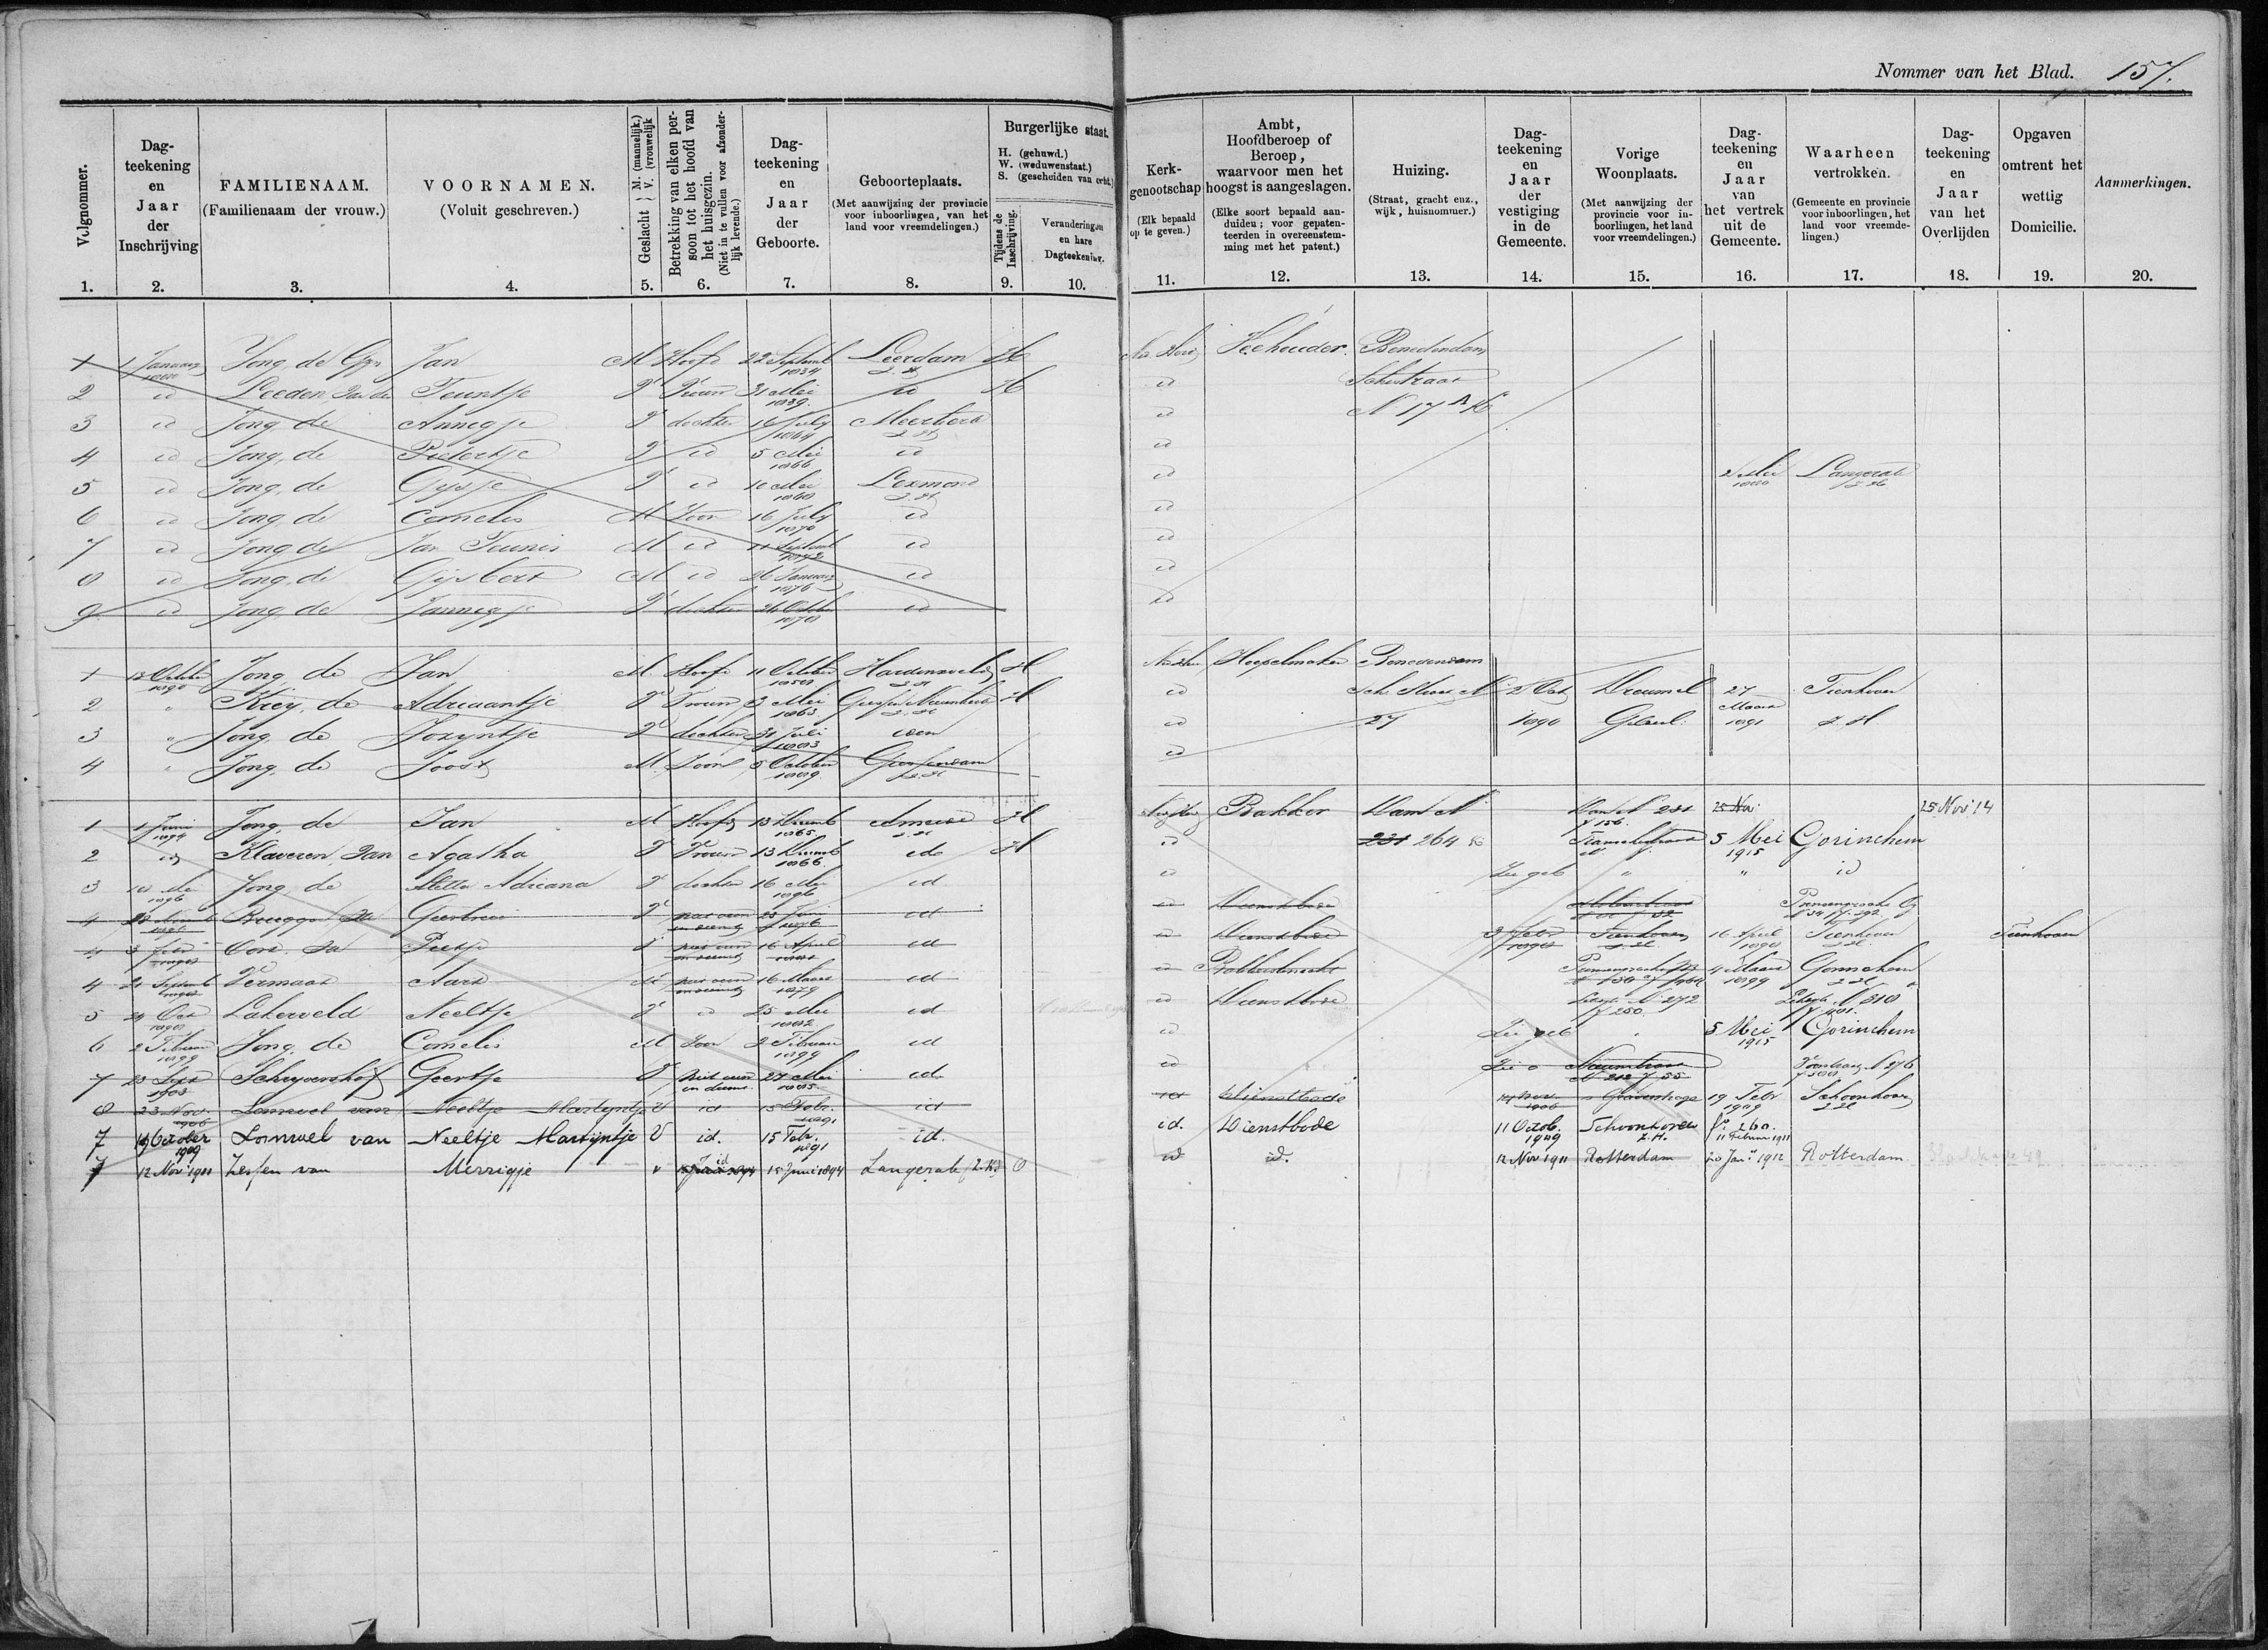 Pagina uit Ameide Bevolkingsregister 1880-1900